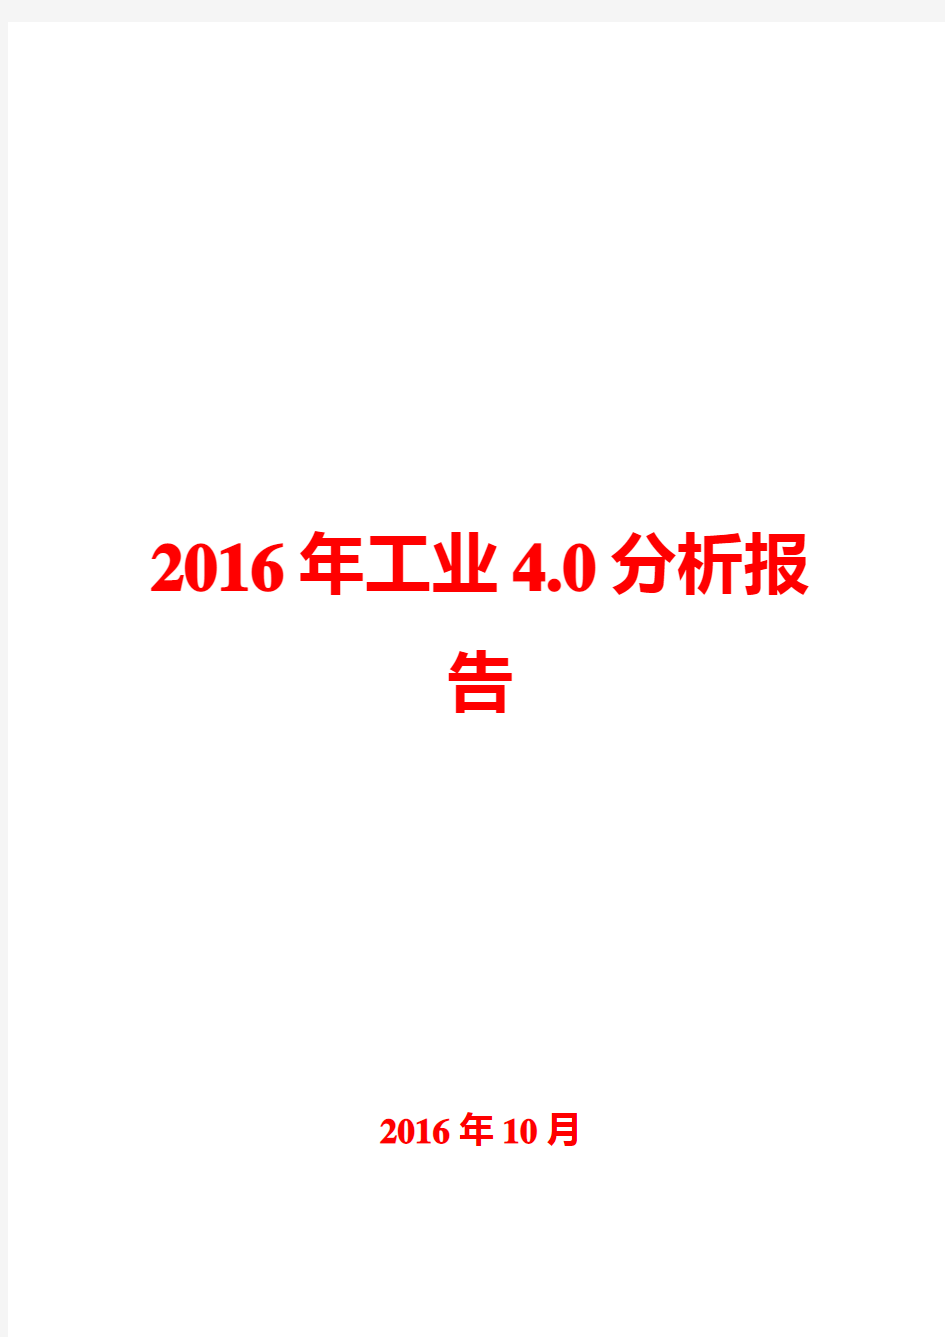 2016年工业4.0分析报告